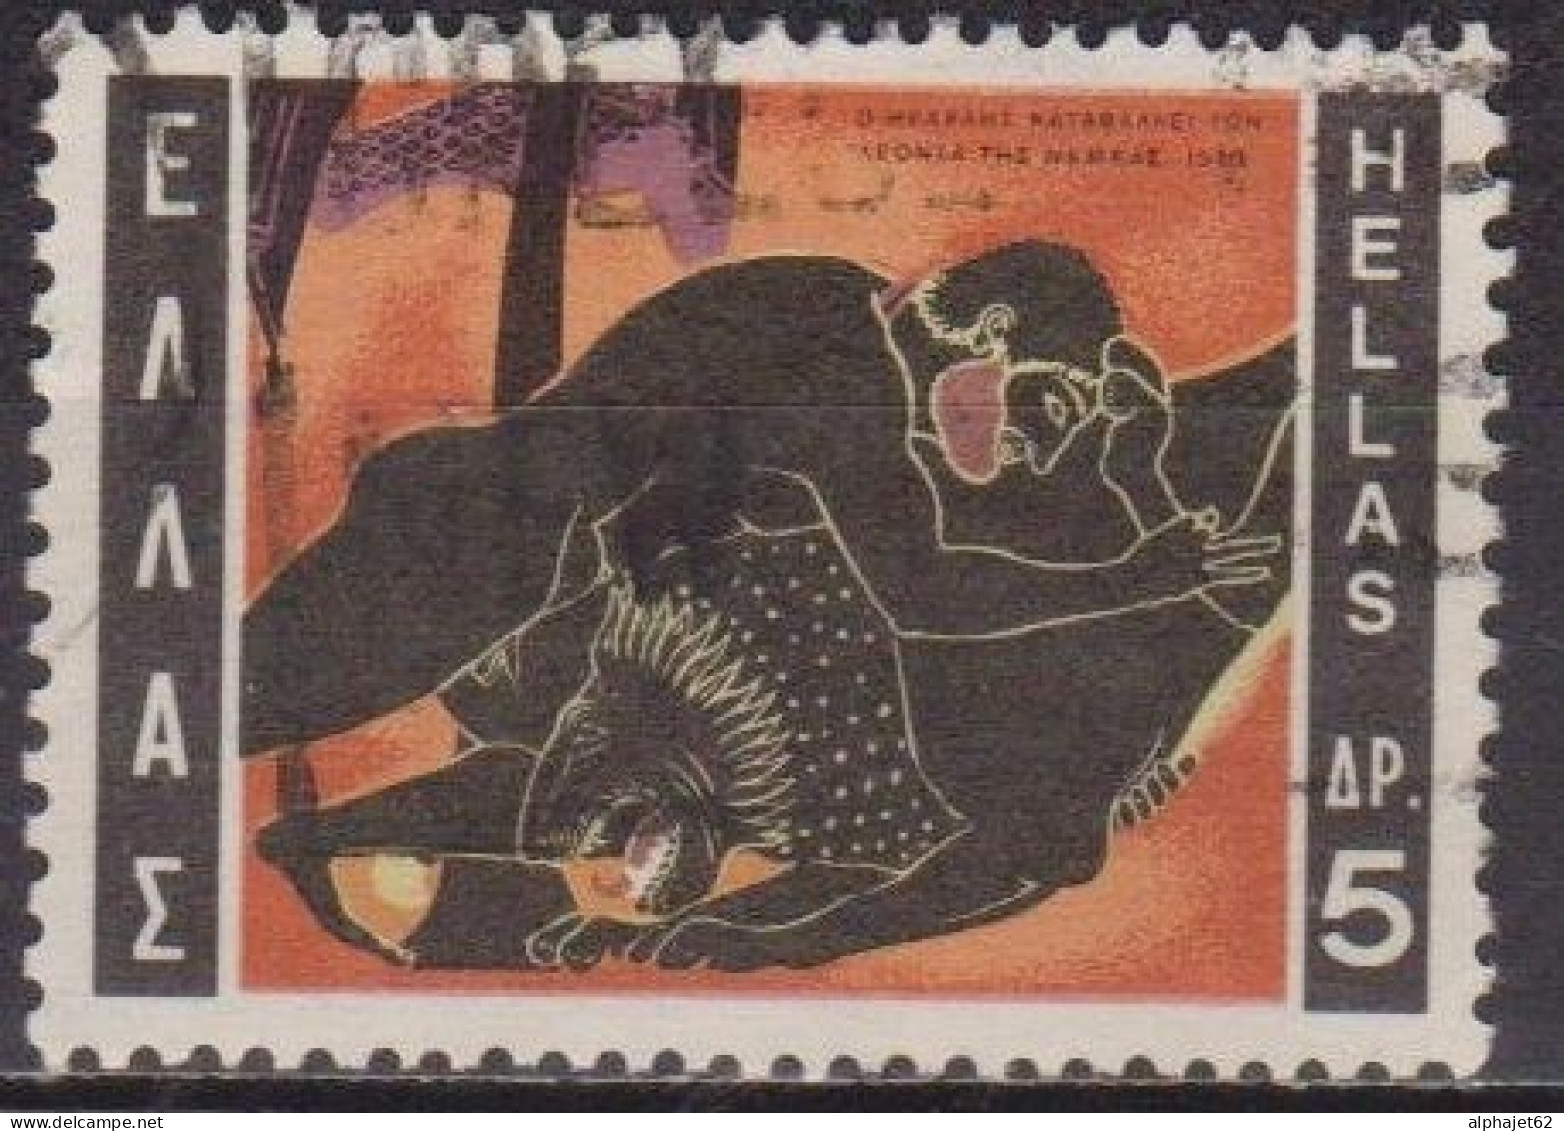 Mythologie - 12 Travaux D'Hercule - GRECE - Le Lion De Némée - N° 1015 - 1970 - Oblitérés